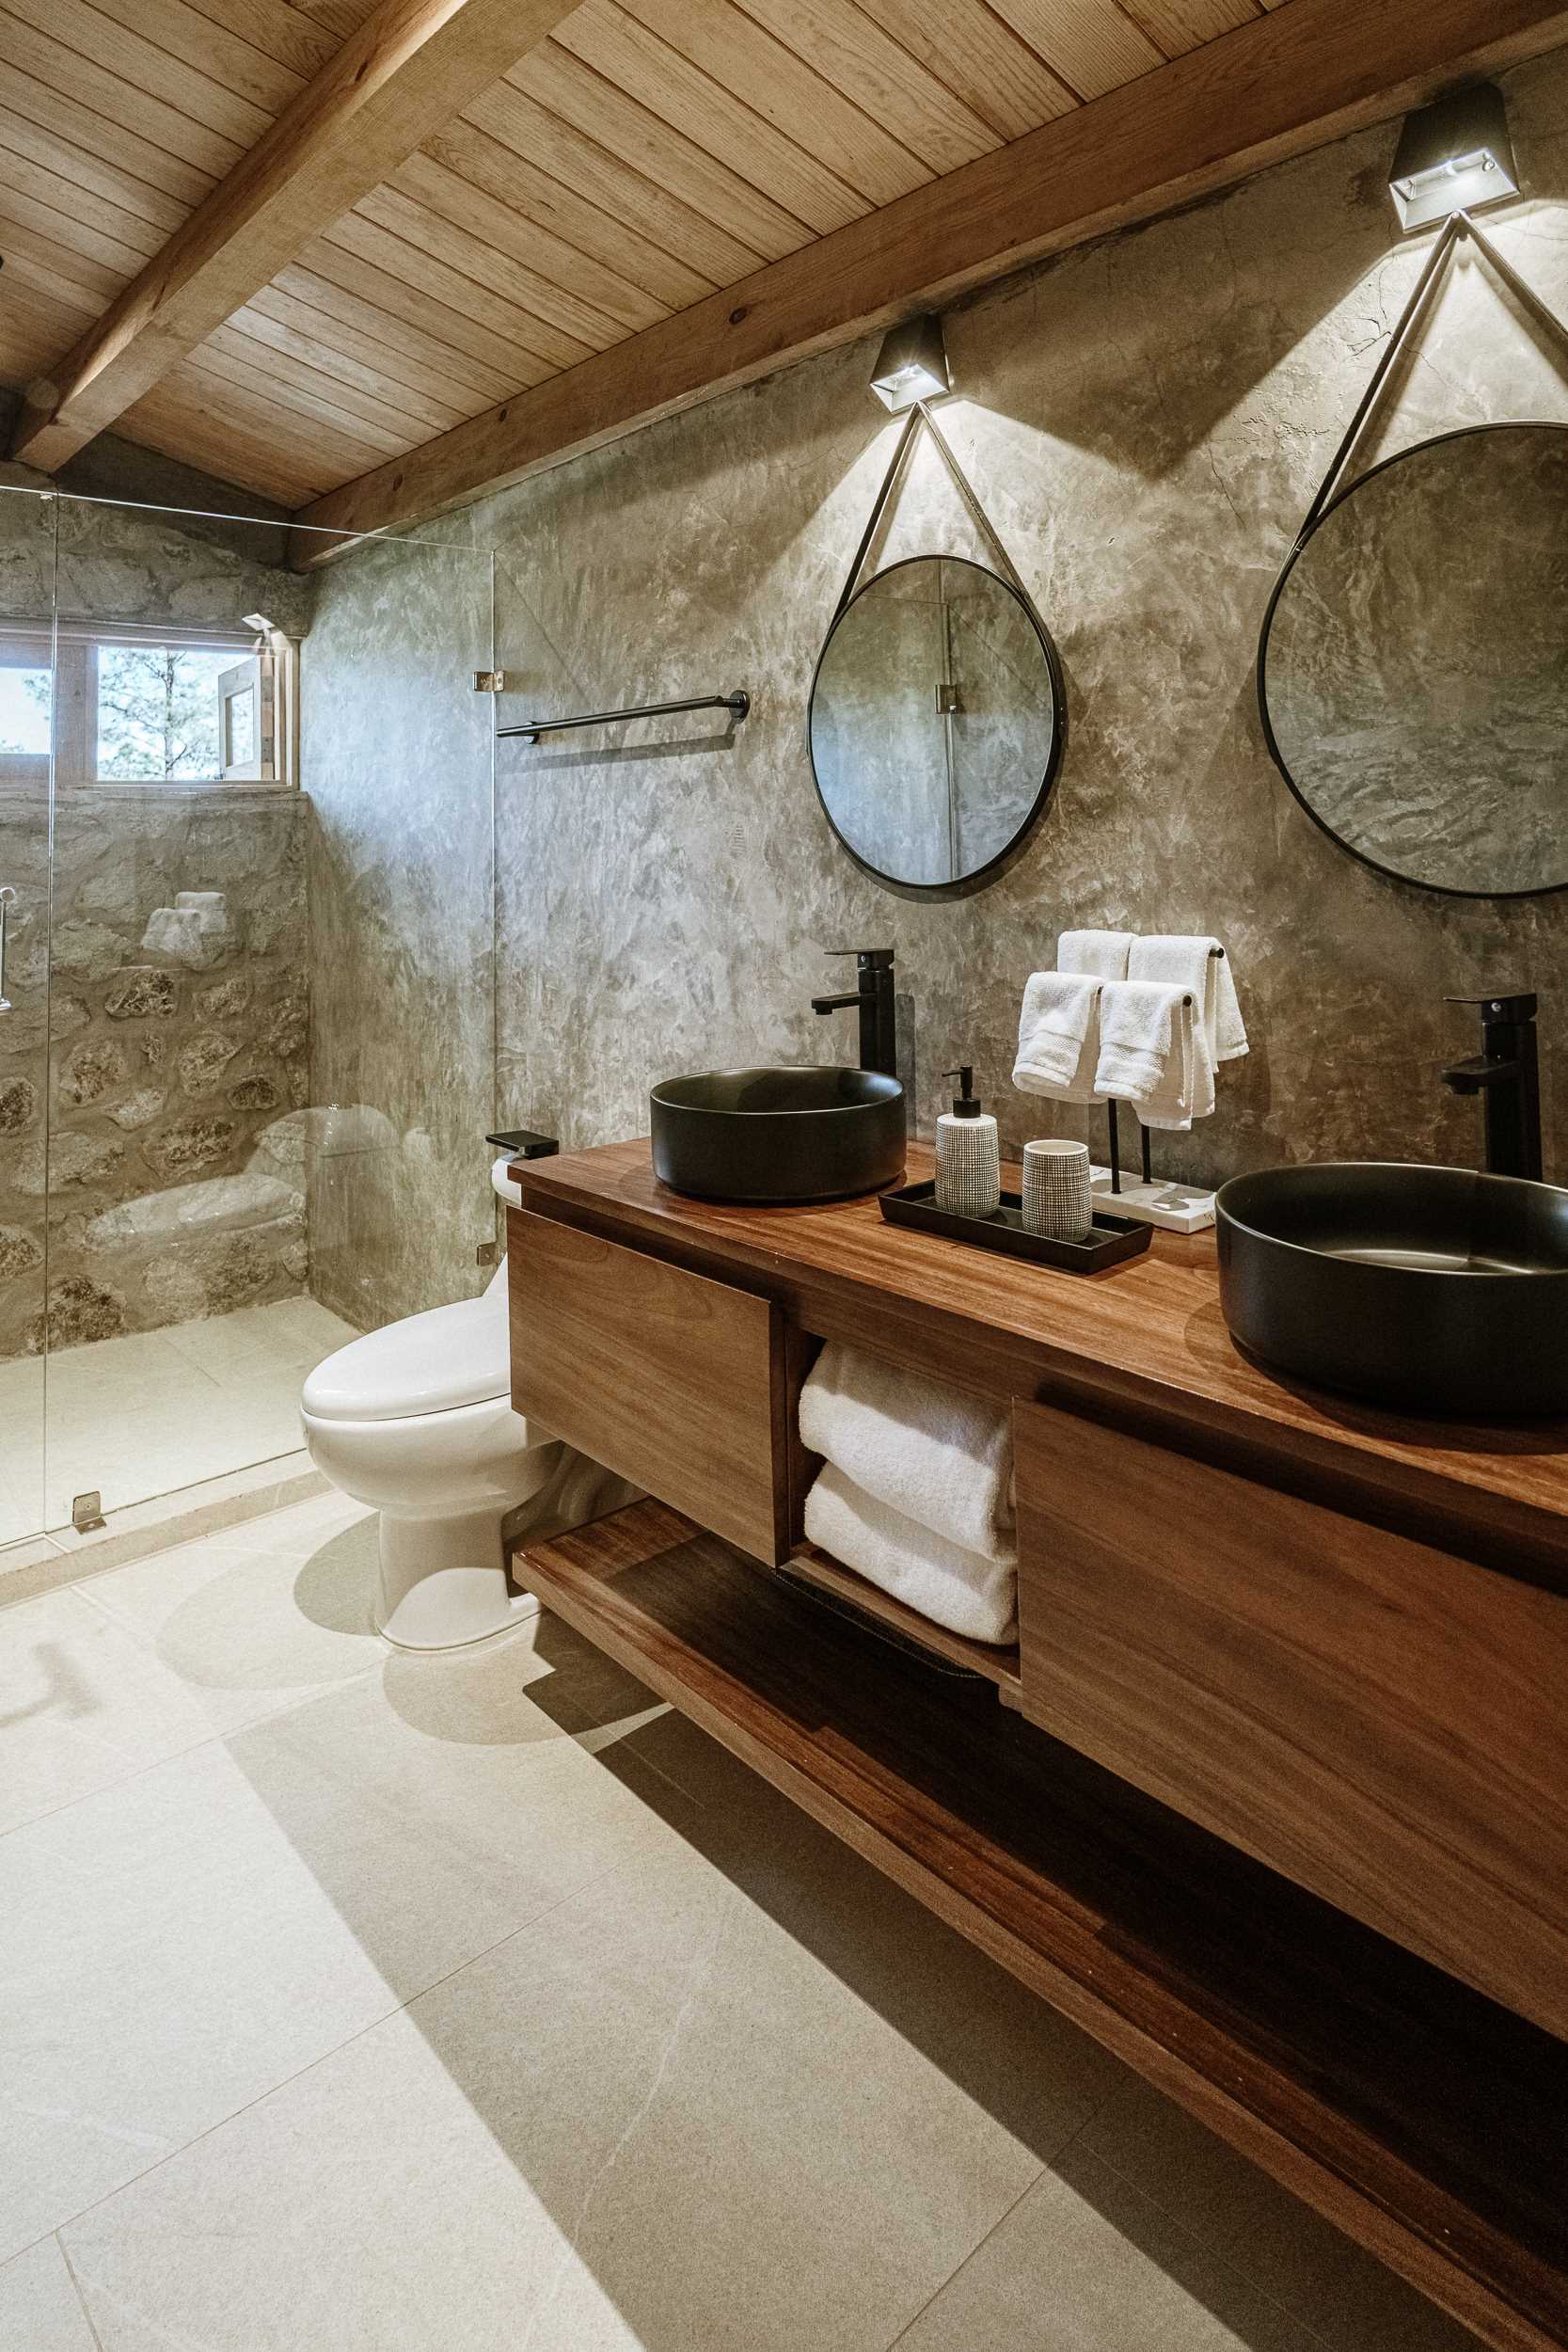 این حمام سنگی و چوبی شامل روشویی دو نفره و دوش شیشه ای است.